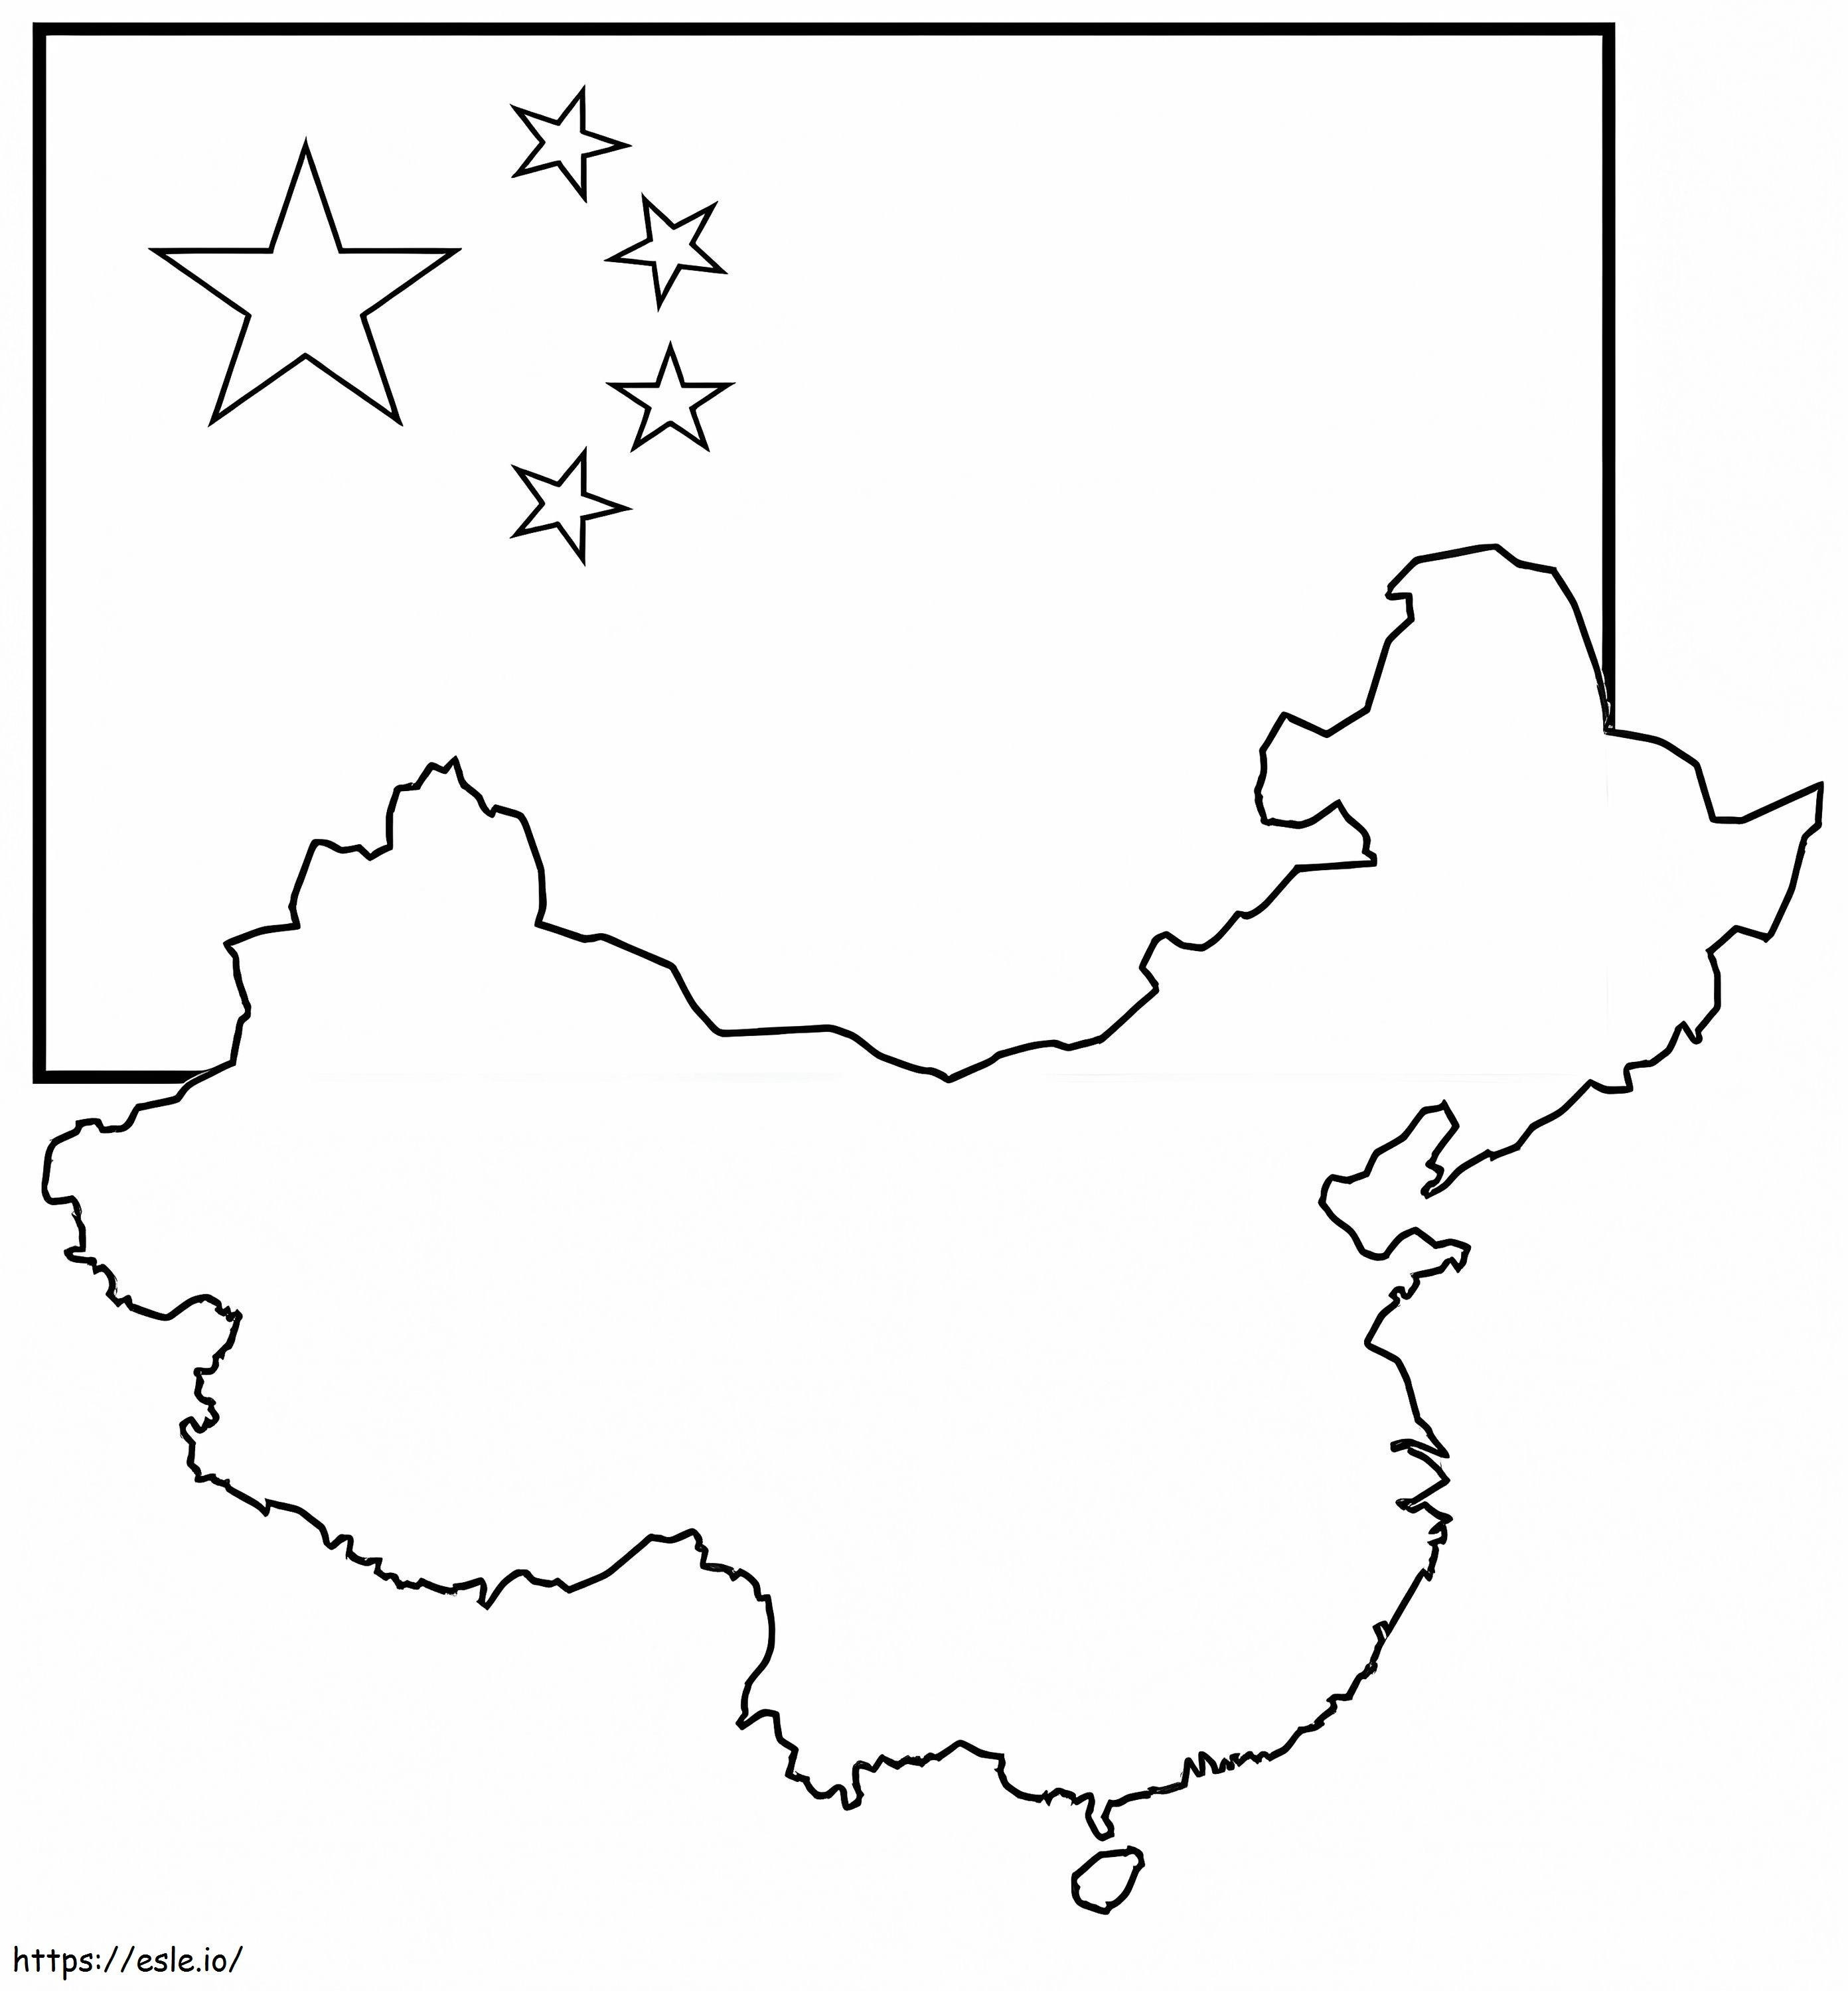 Çin Bayrağı Ve Haritası boyama